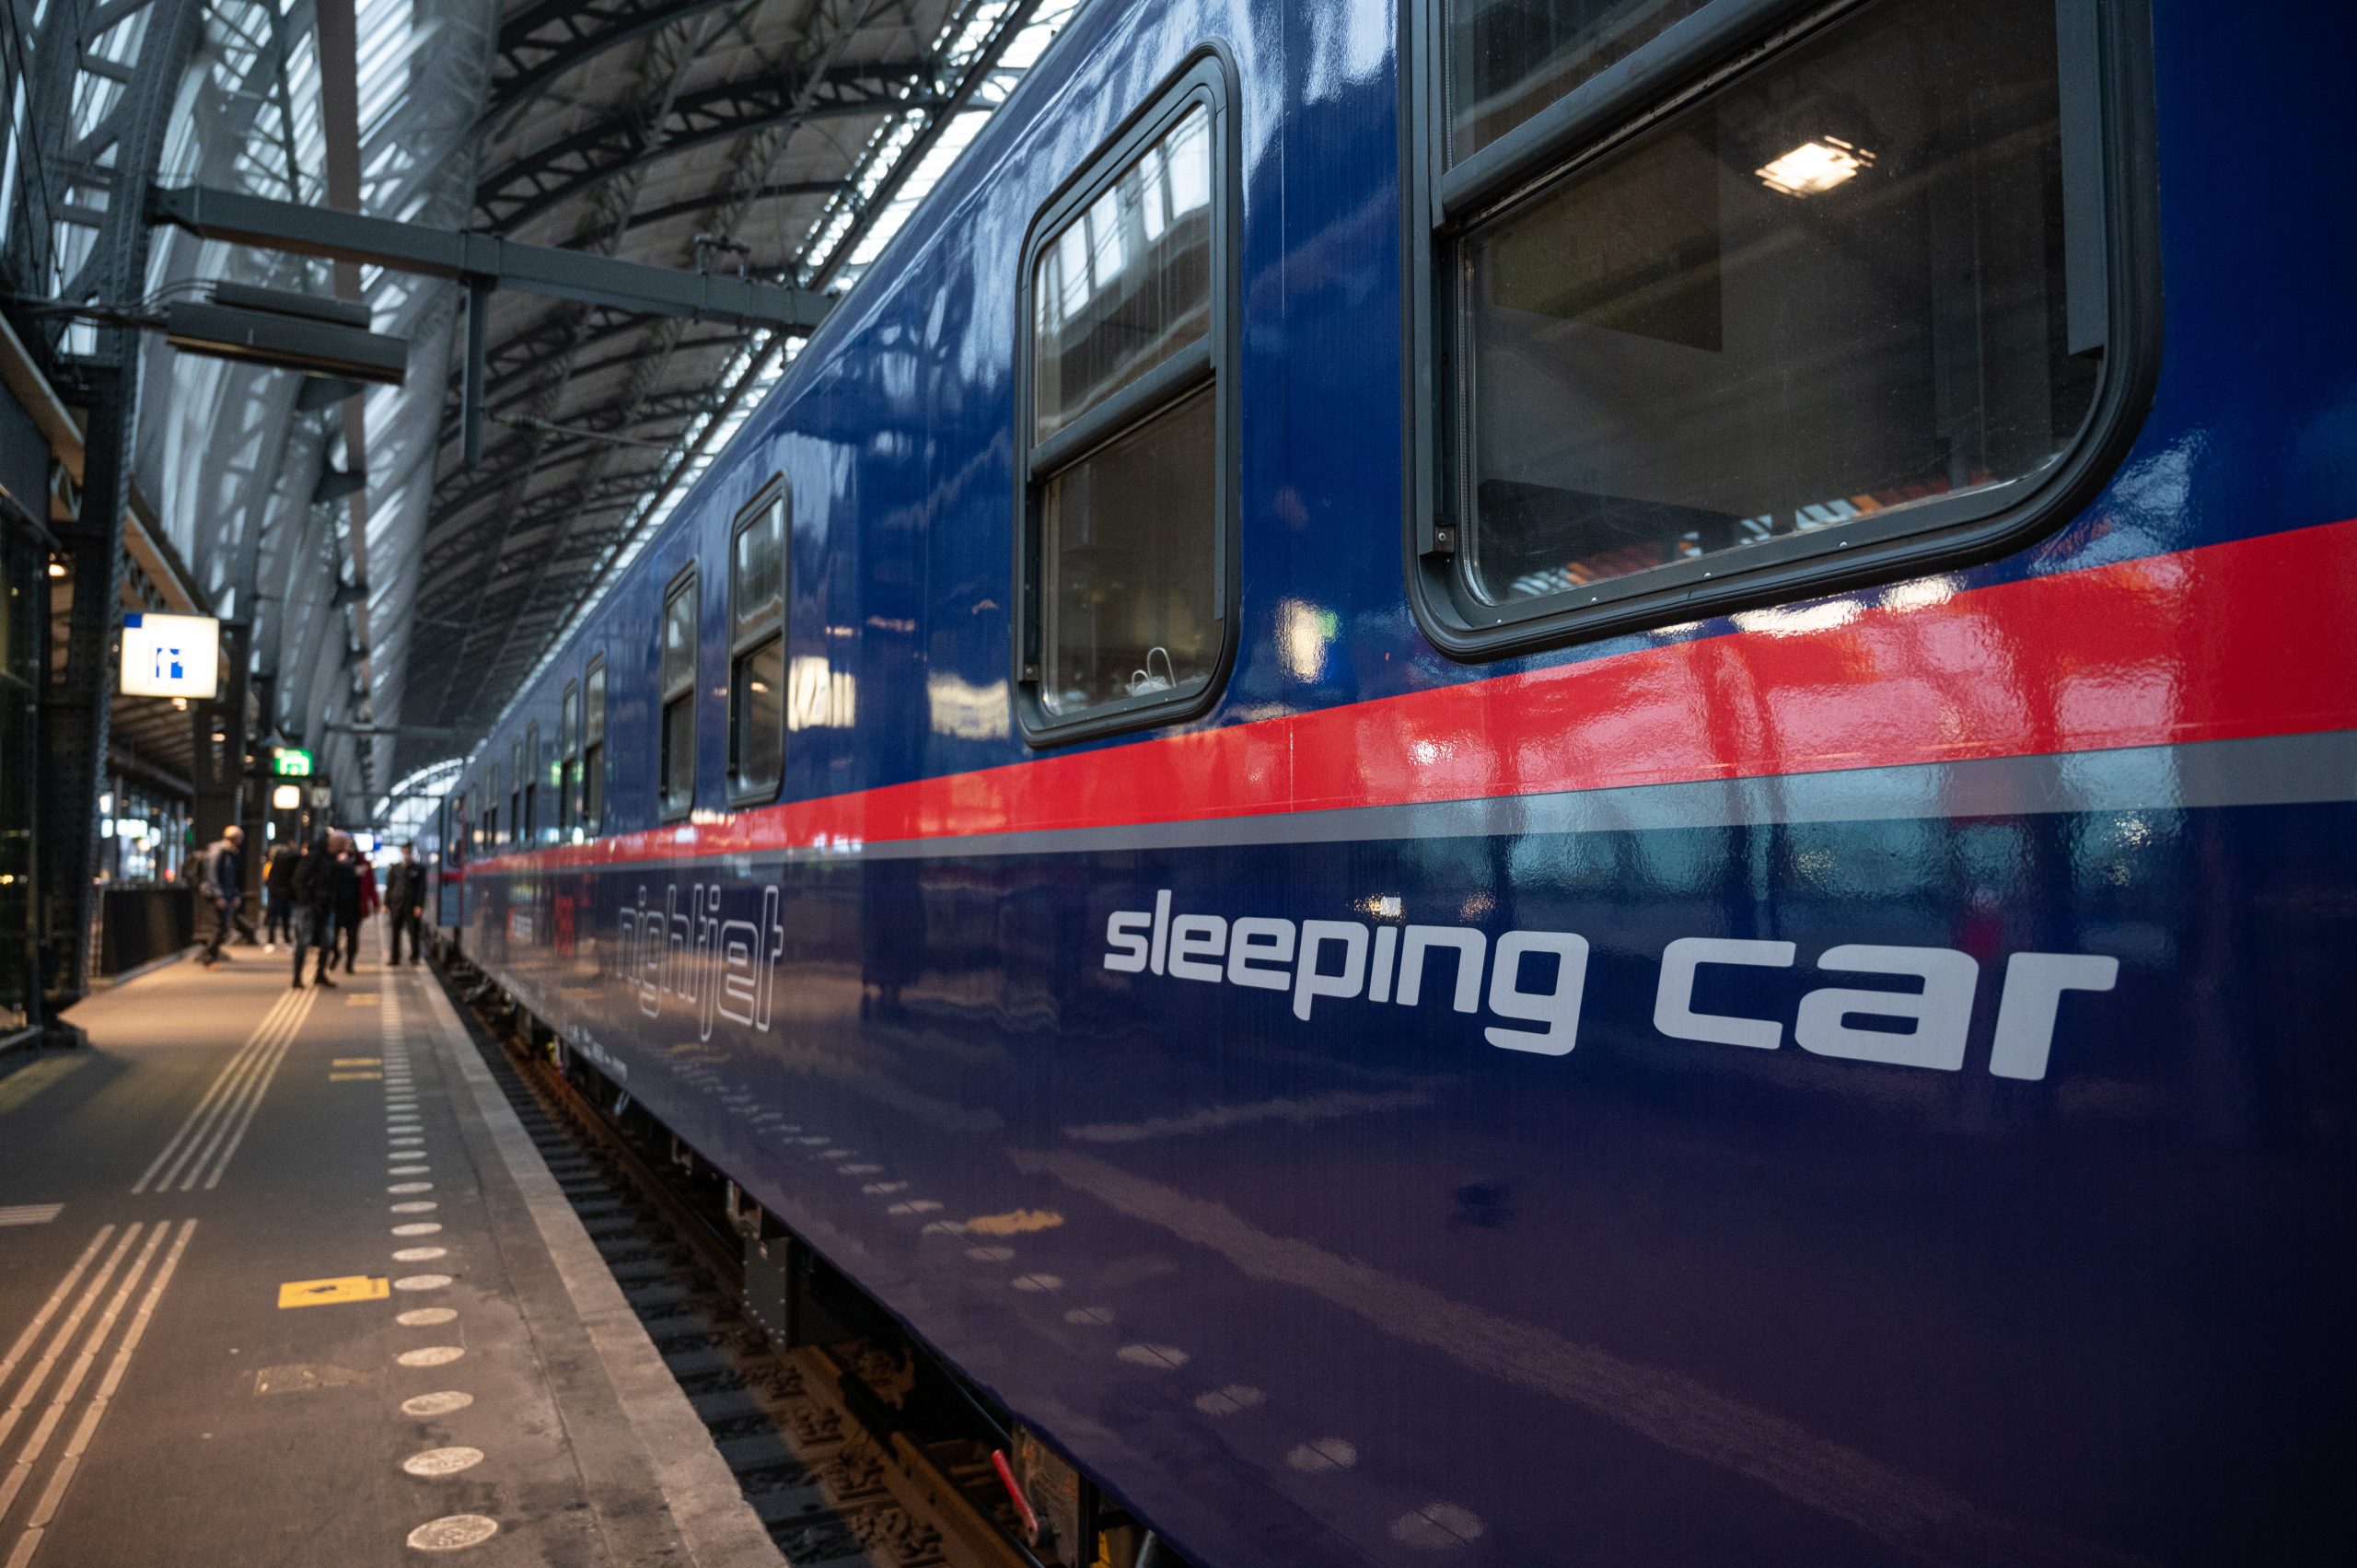 Internationale treinen, Nightjets en eurobahn geraakt door geplande spoorstaking Duitsland